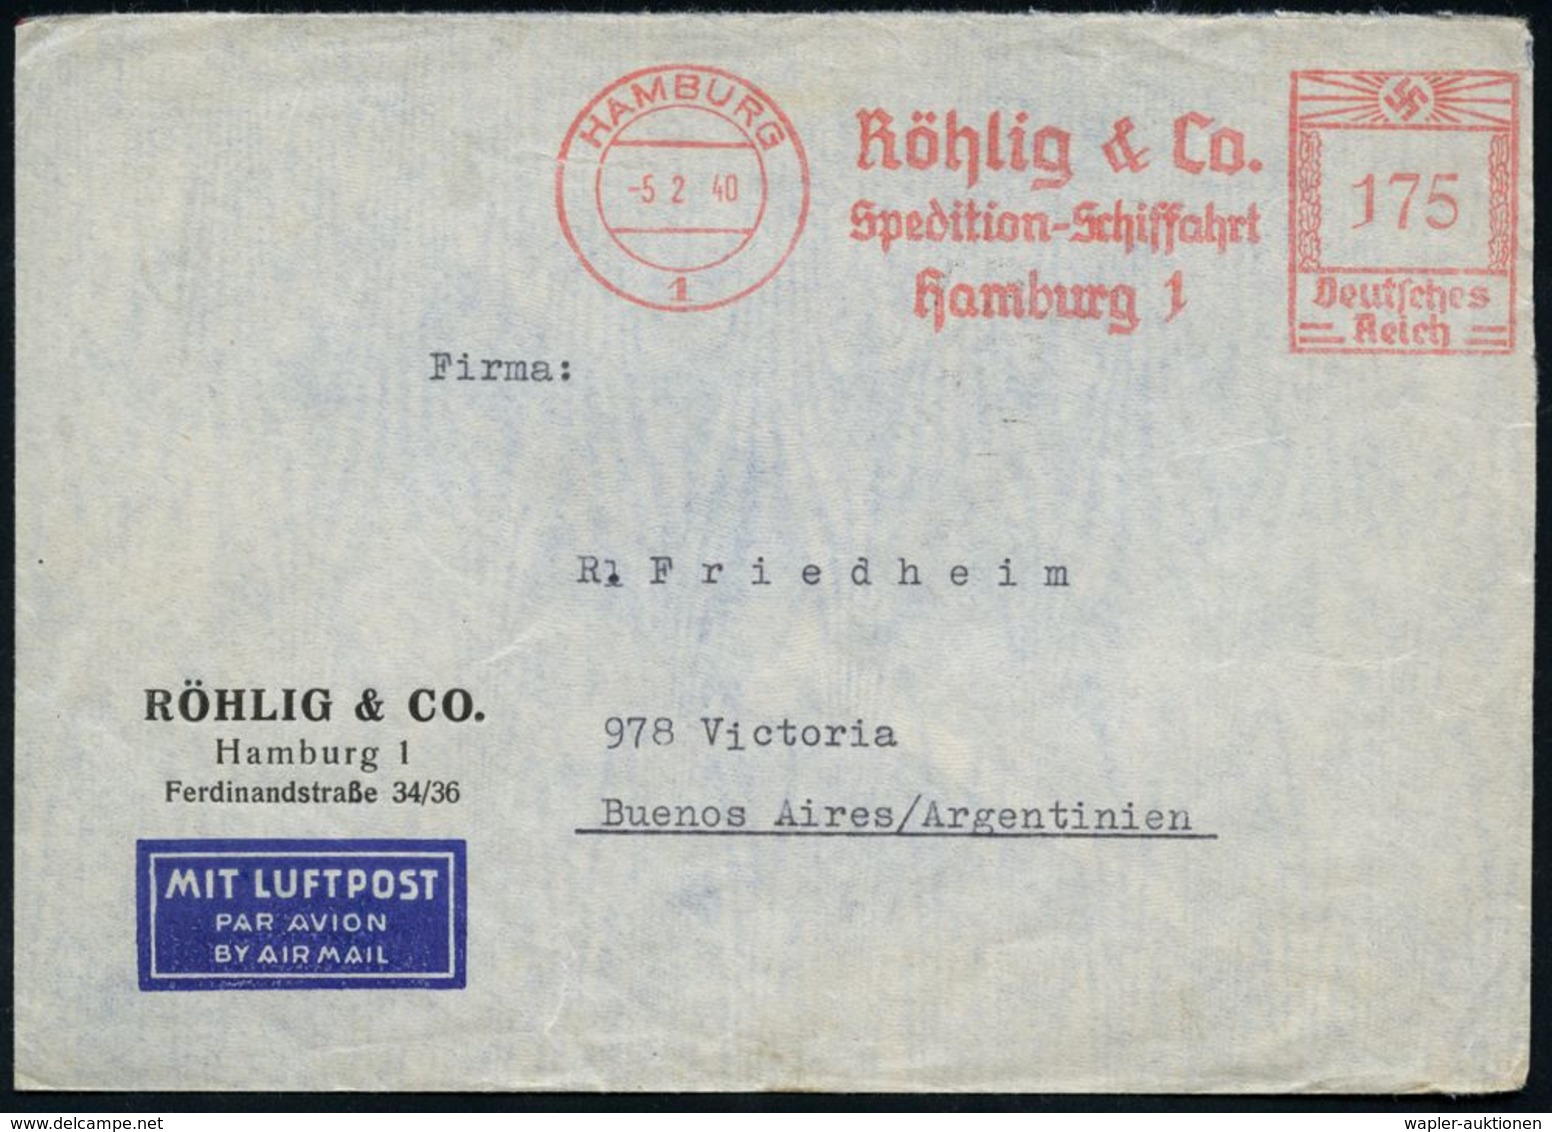 HAMBURG/ 1/ Röhlig & Co/ Spedition-Schiffahrt 1940 (5.2.) AFS 175 Pf. + Rs. Zensur-Streifen "Geöffnet/OKW" (= Ffm., Rie. - Sonstige (Luft)